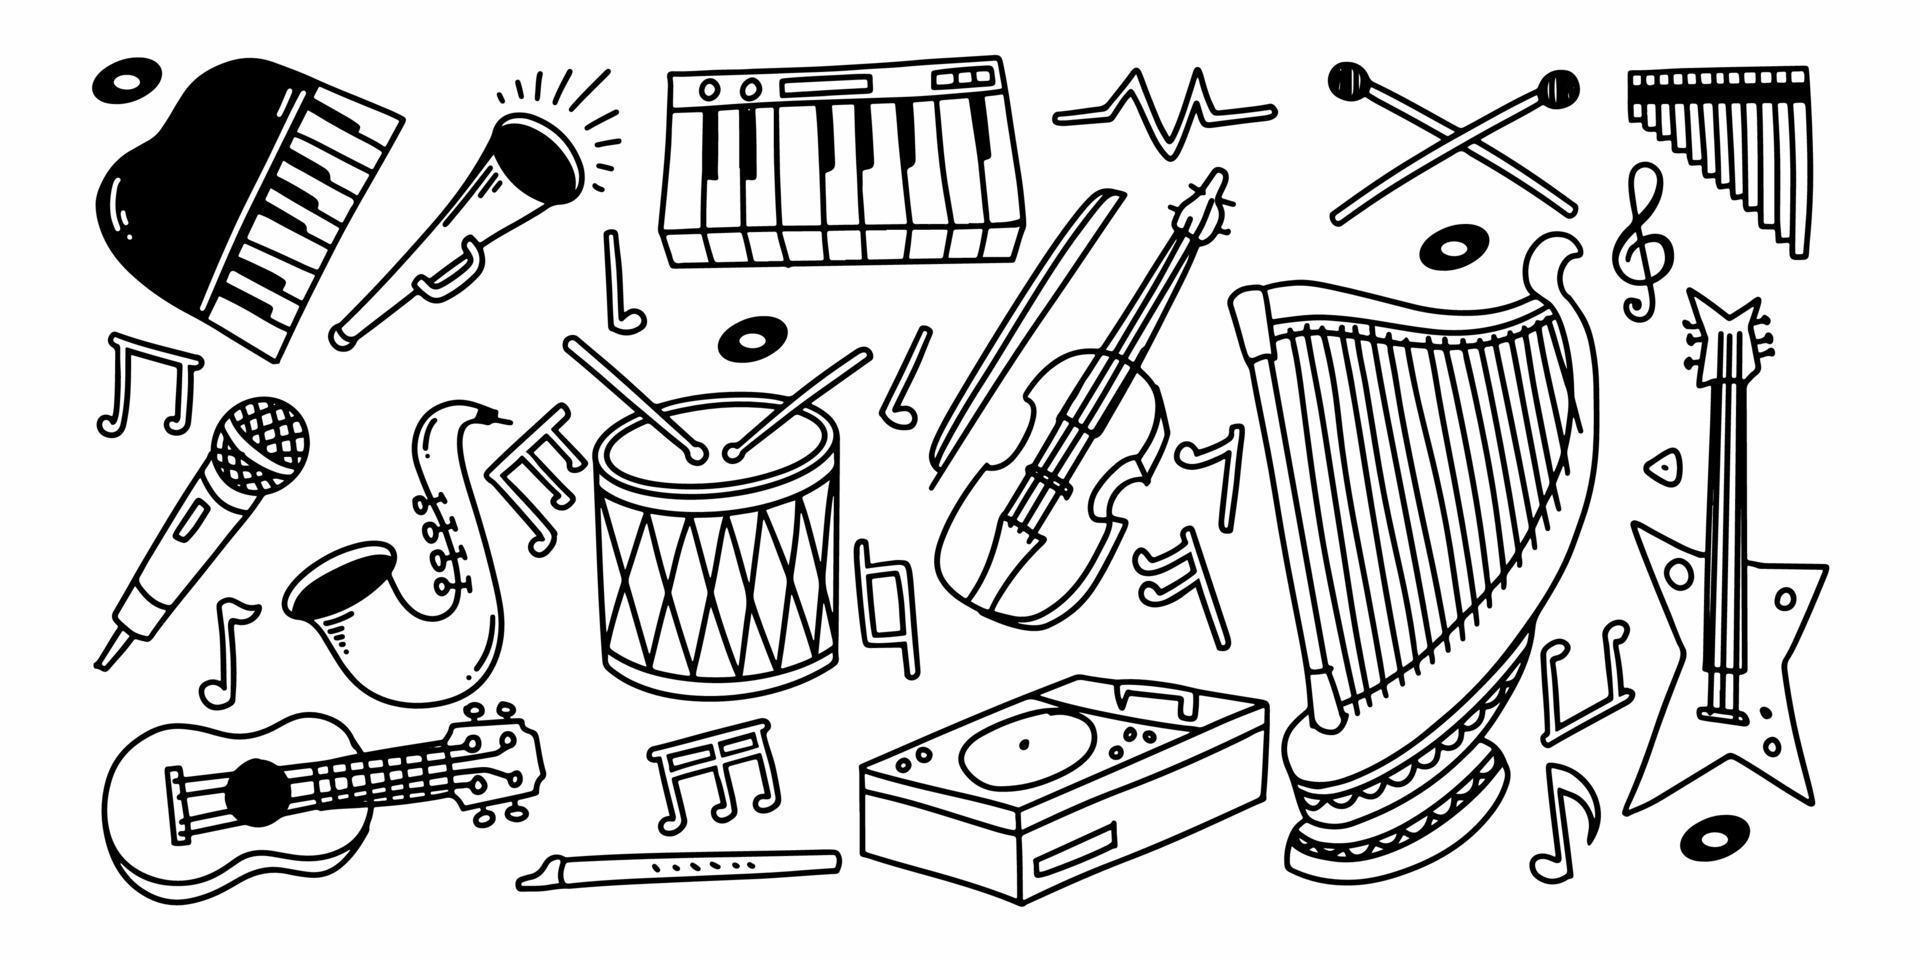 conjunto de elementos de música acústica en estilo infantil doodle dibujado a mano vector